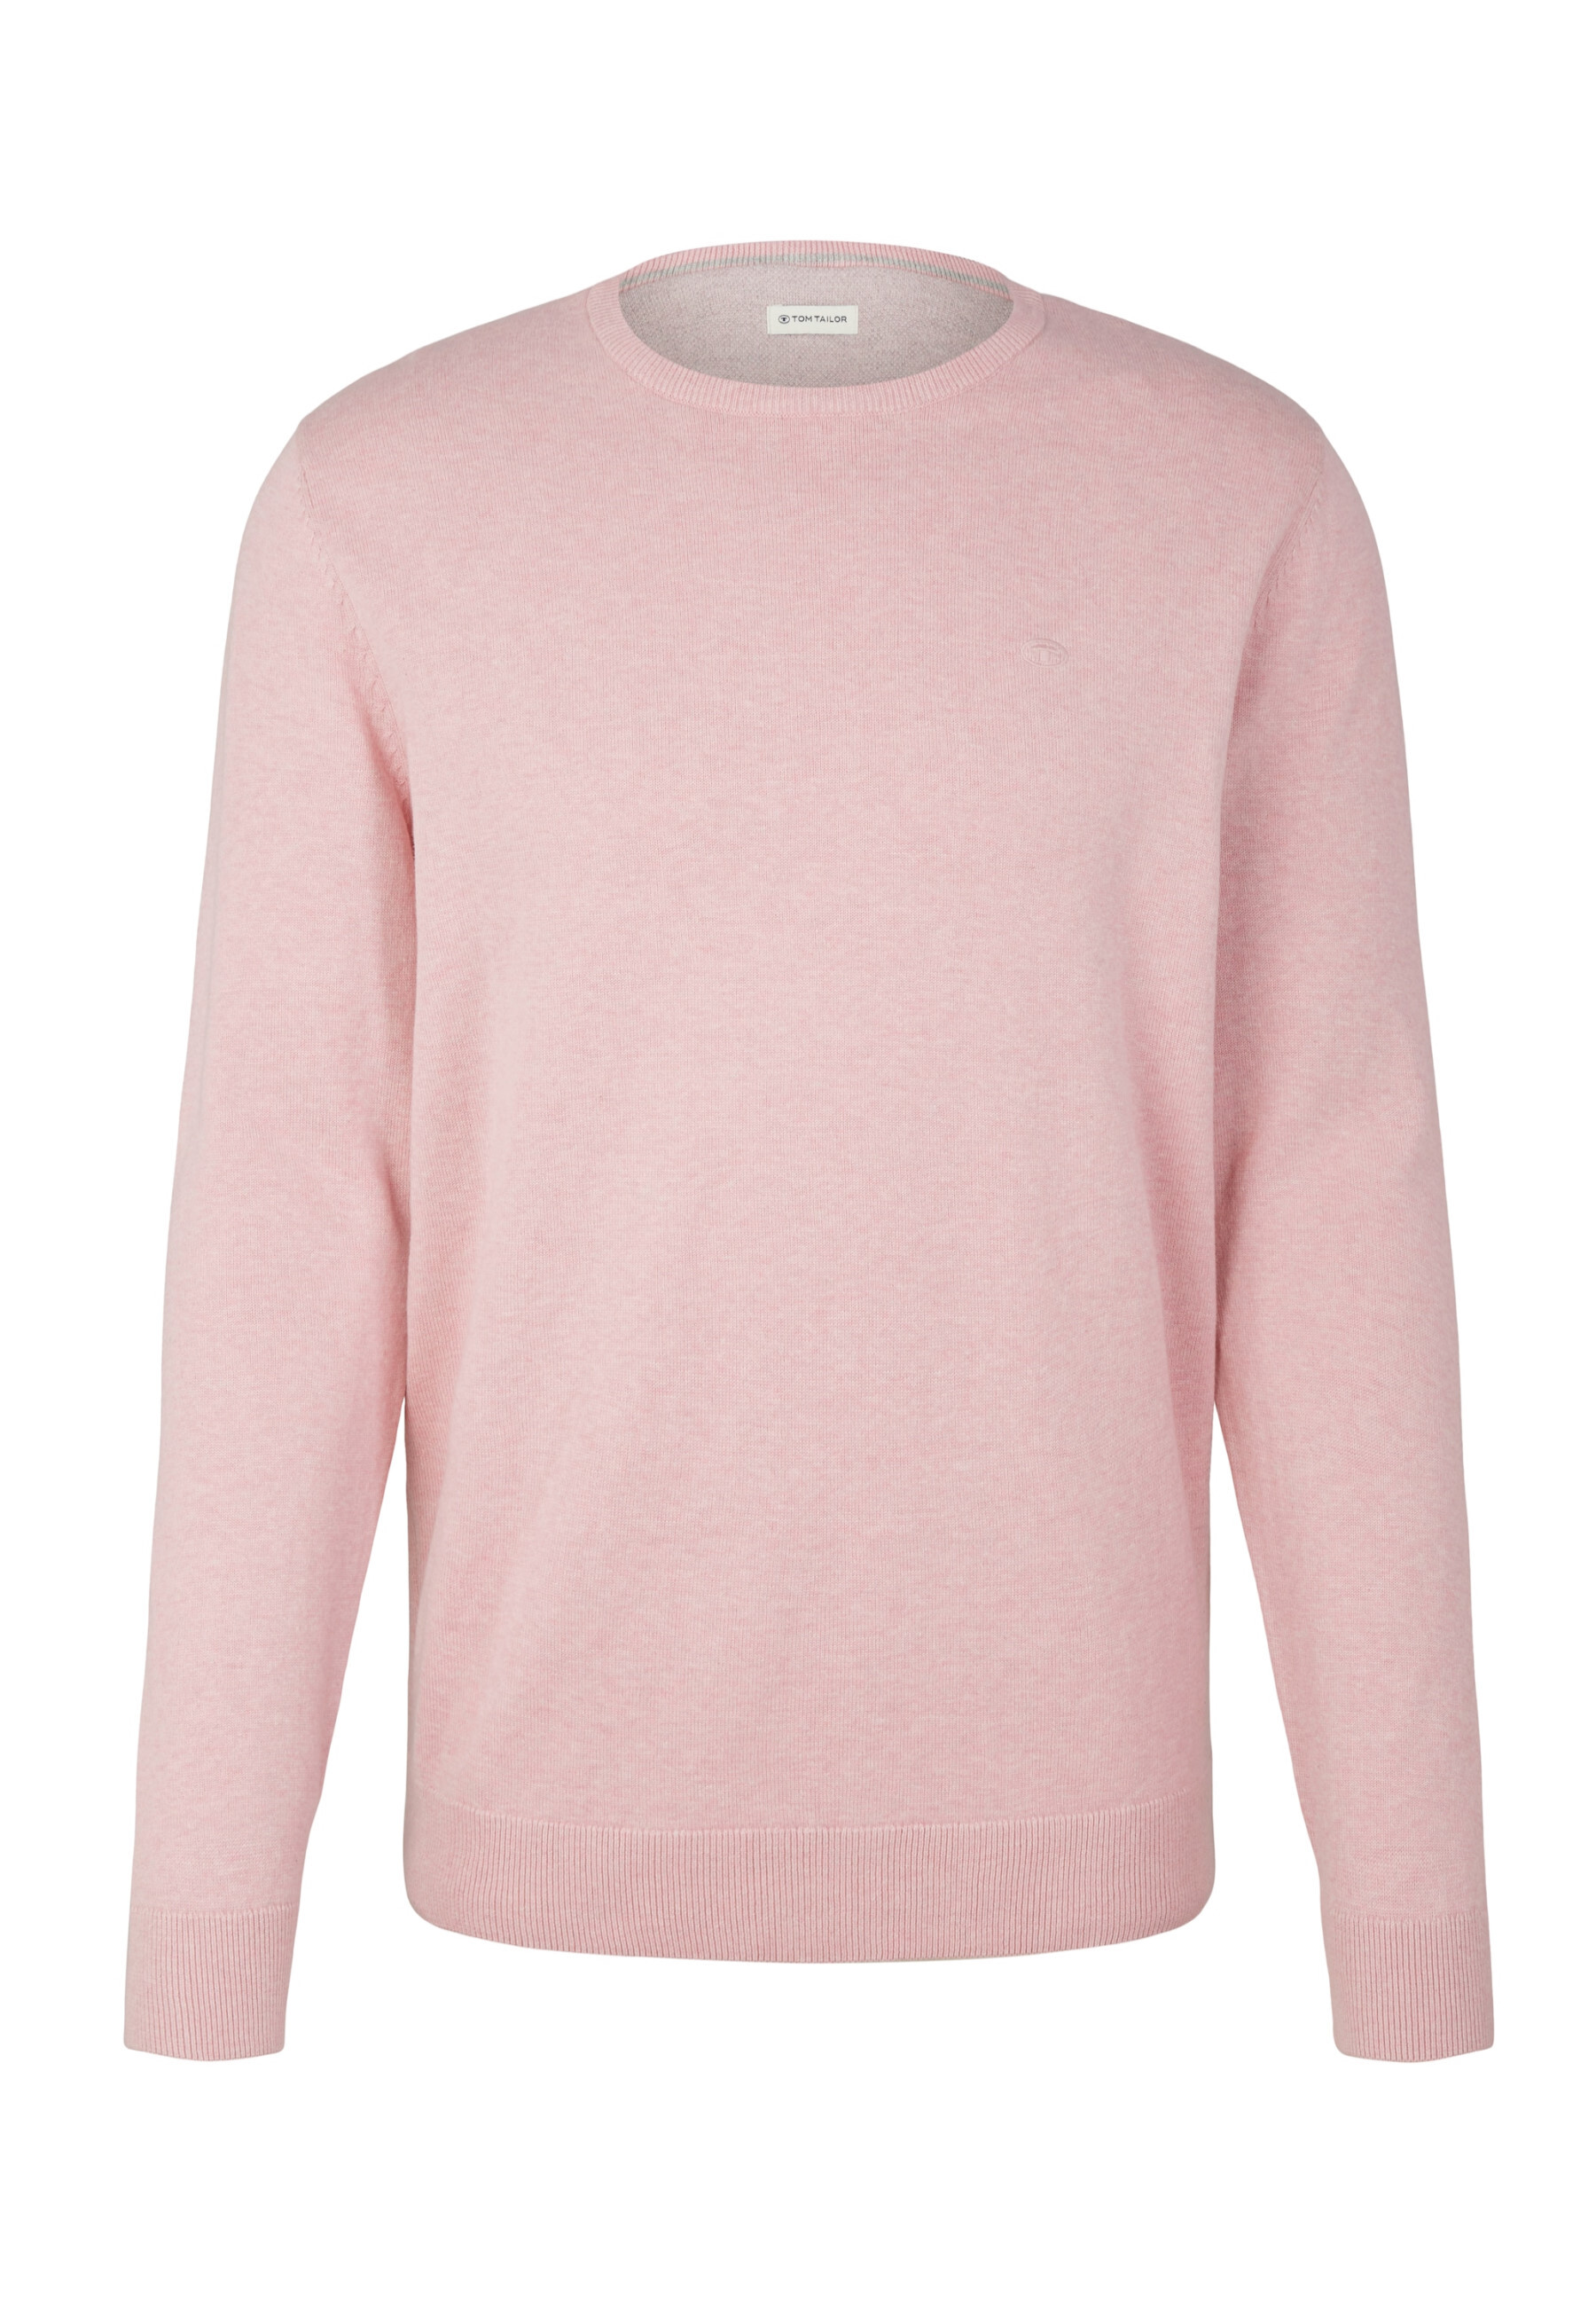 Пуловер Tom Tailor, розовый пуловер tom tailor размер s розовый